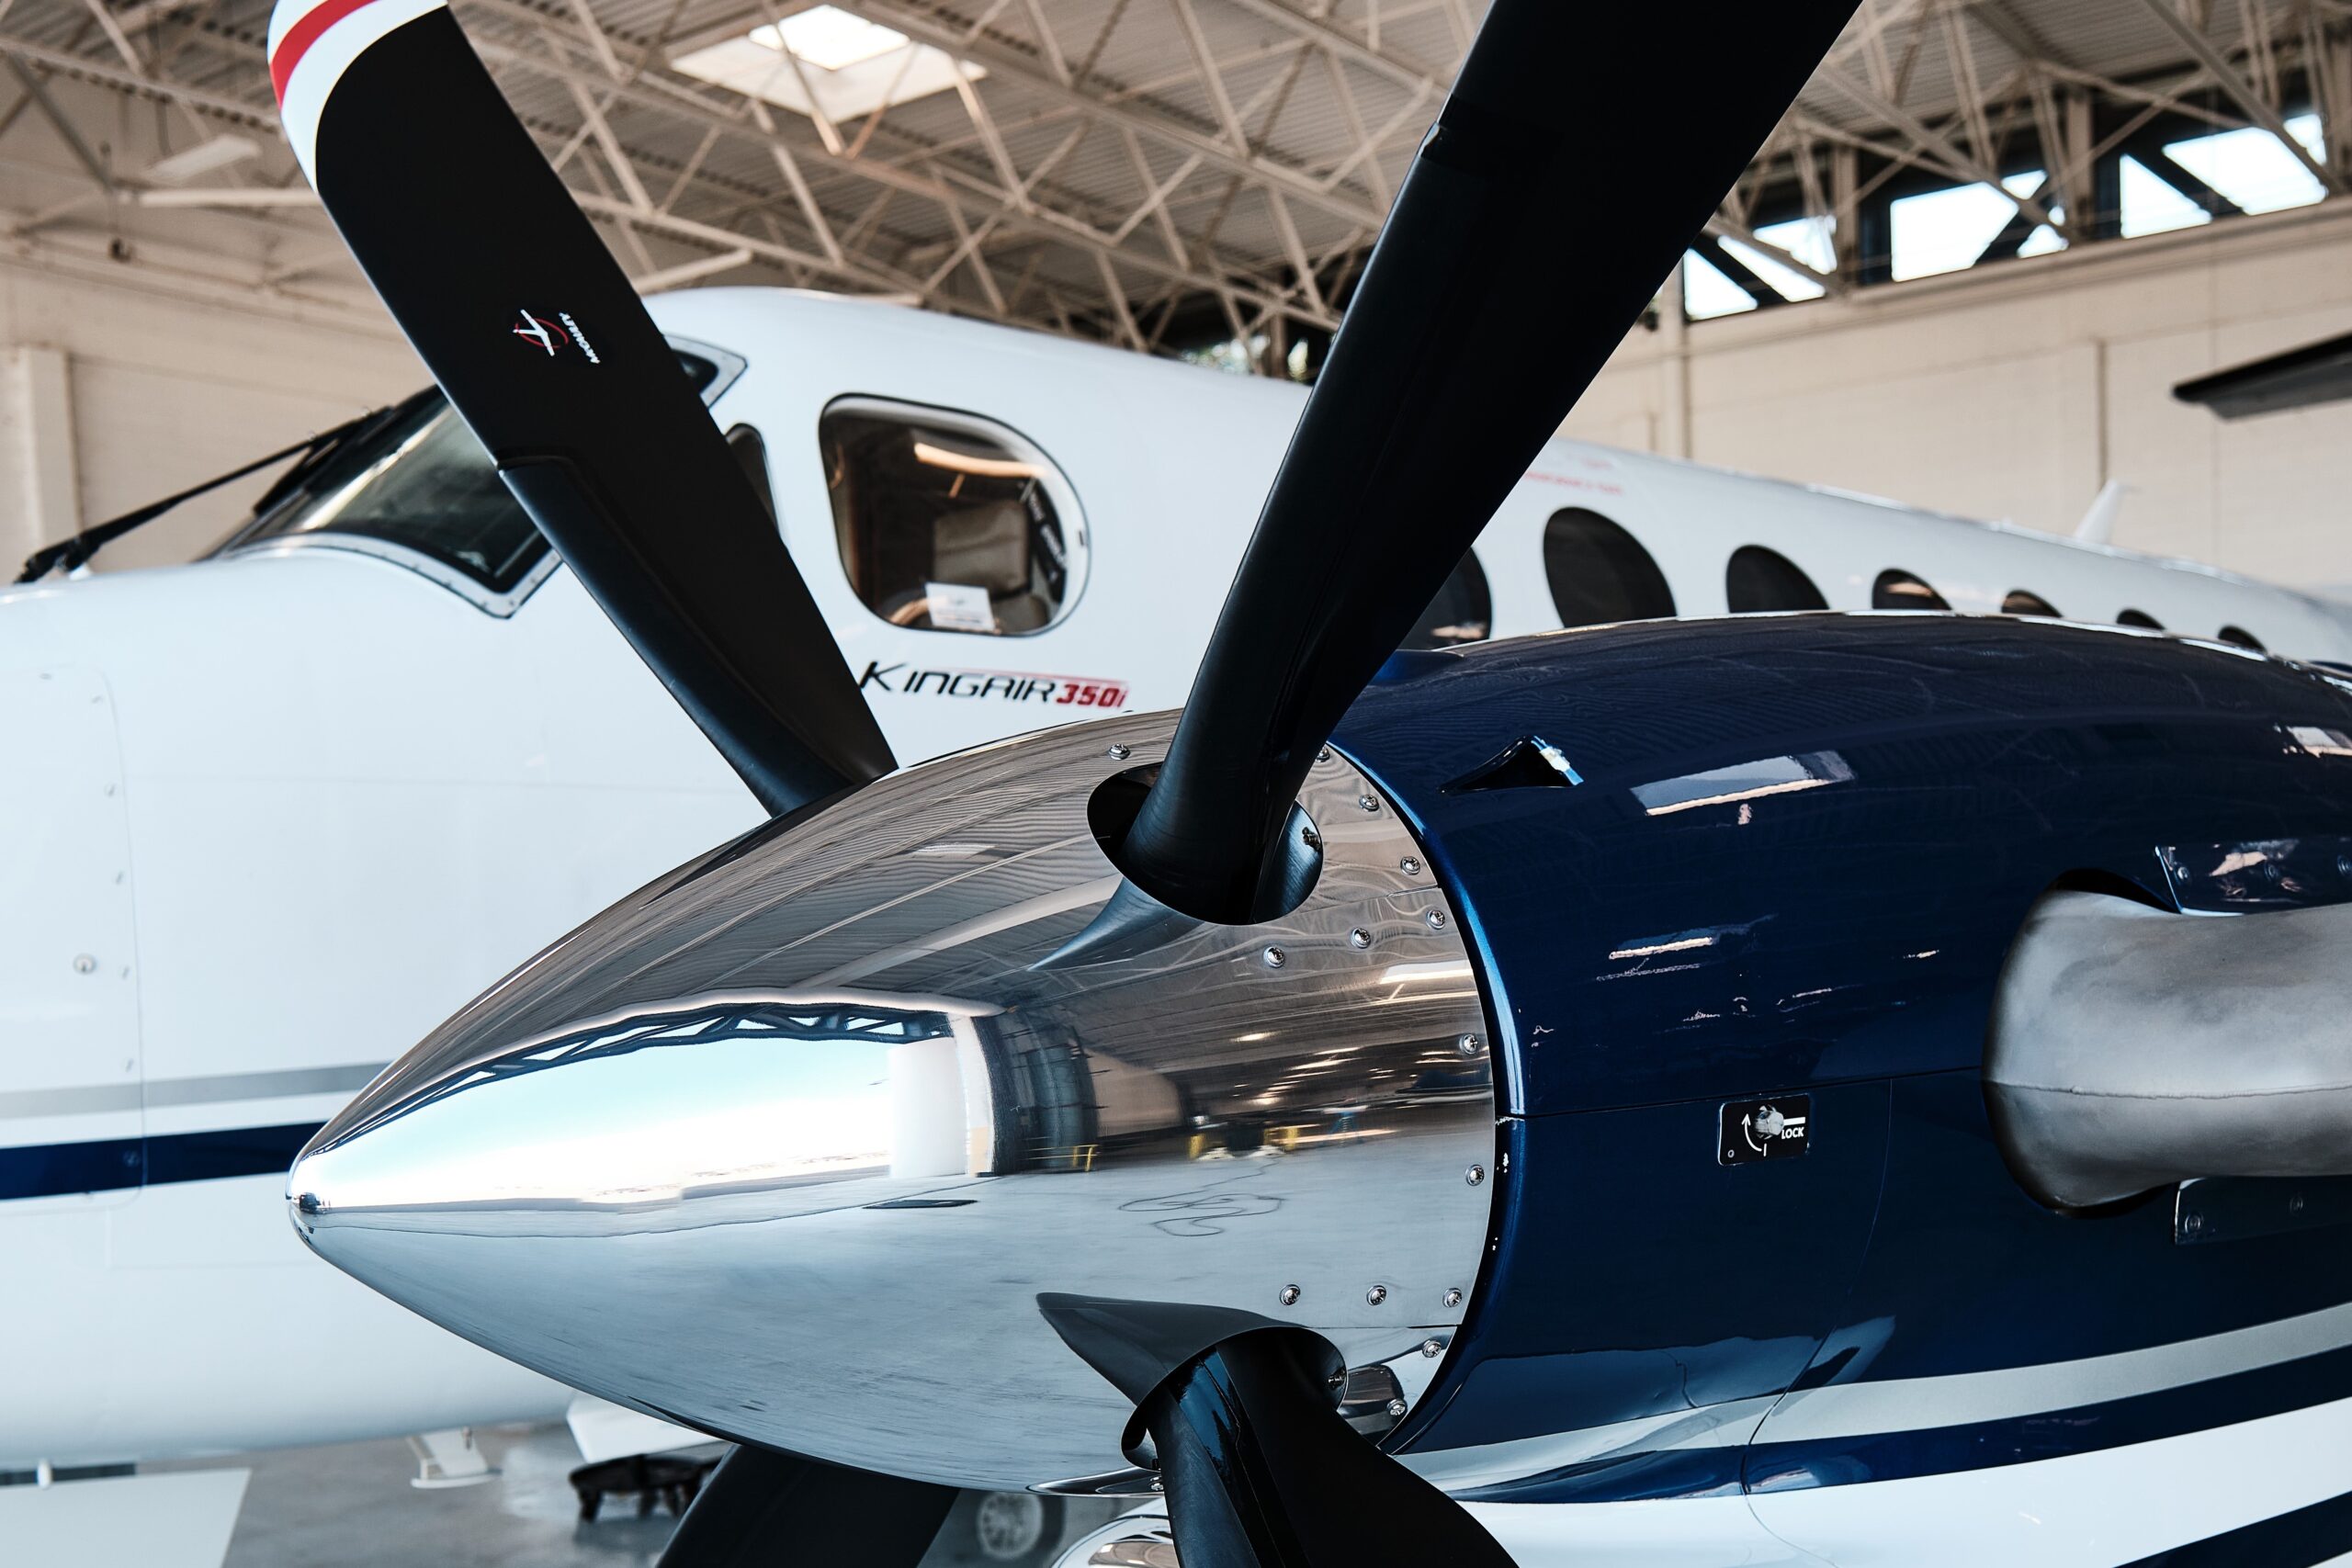 New bespoke propeller for Beechcraft executive aircraft